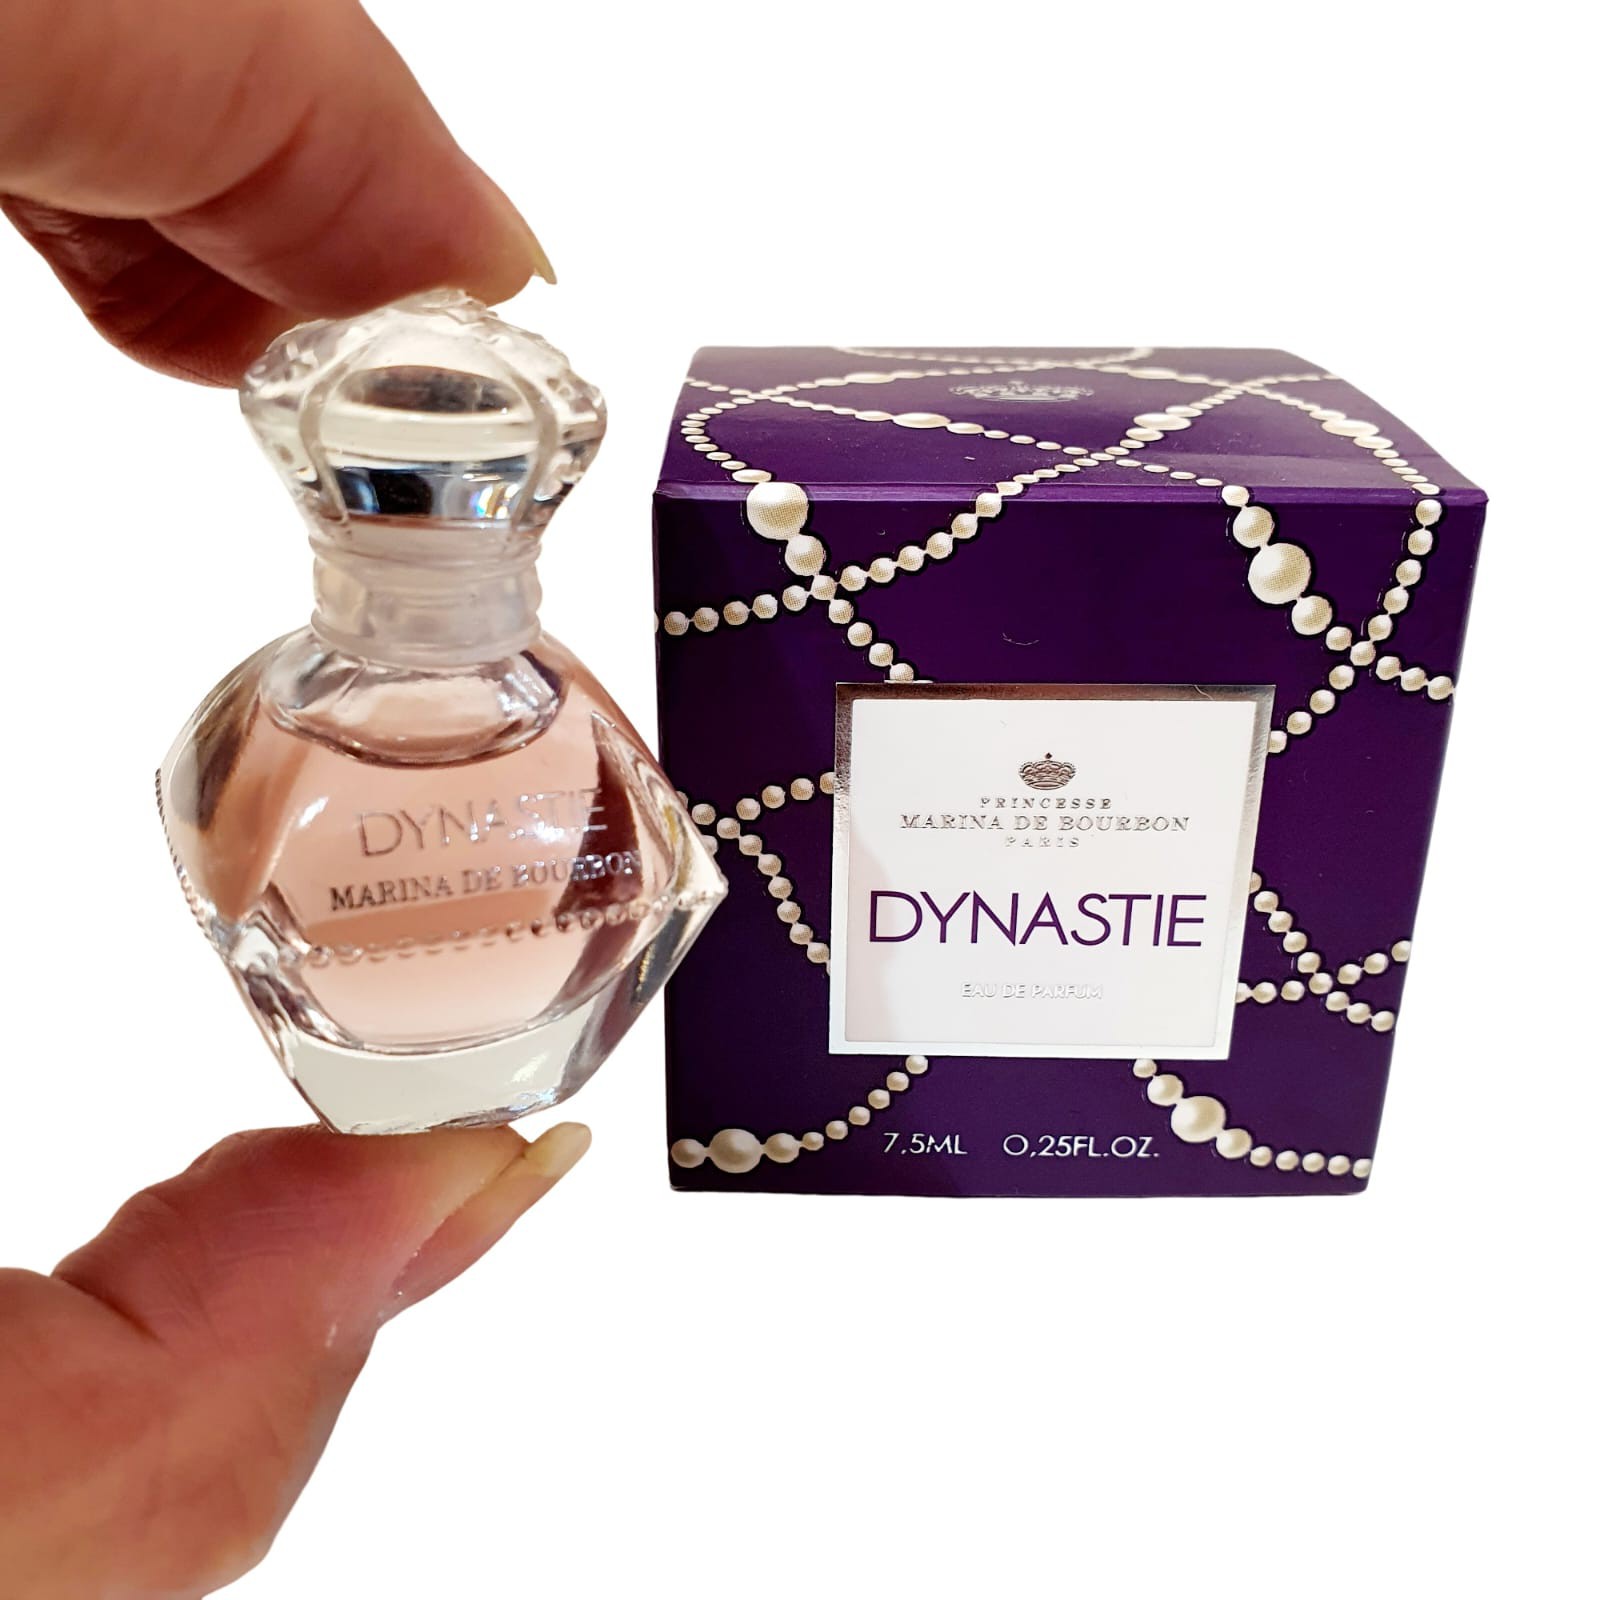 Miniatura Dynastie Eau de Parfum de Princesse Marina De Bourbon 7,5ml -  Original - Kaory Perfumaria - Perfumes Originais & Decants